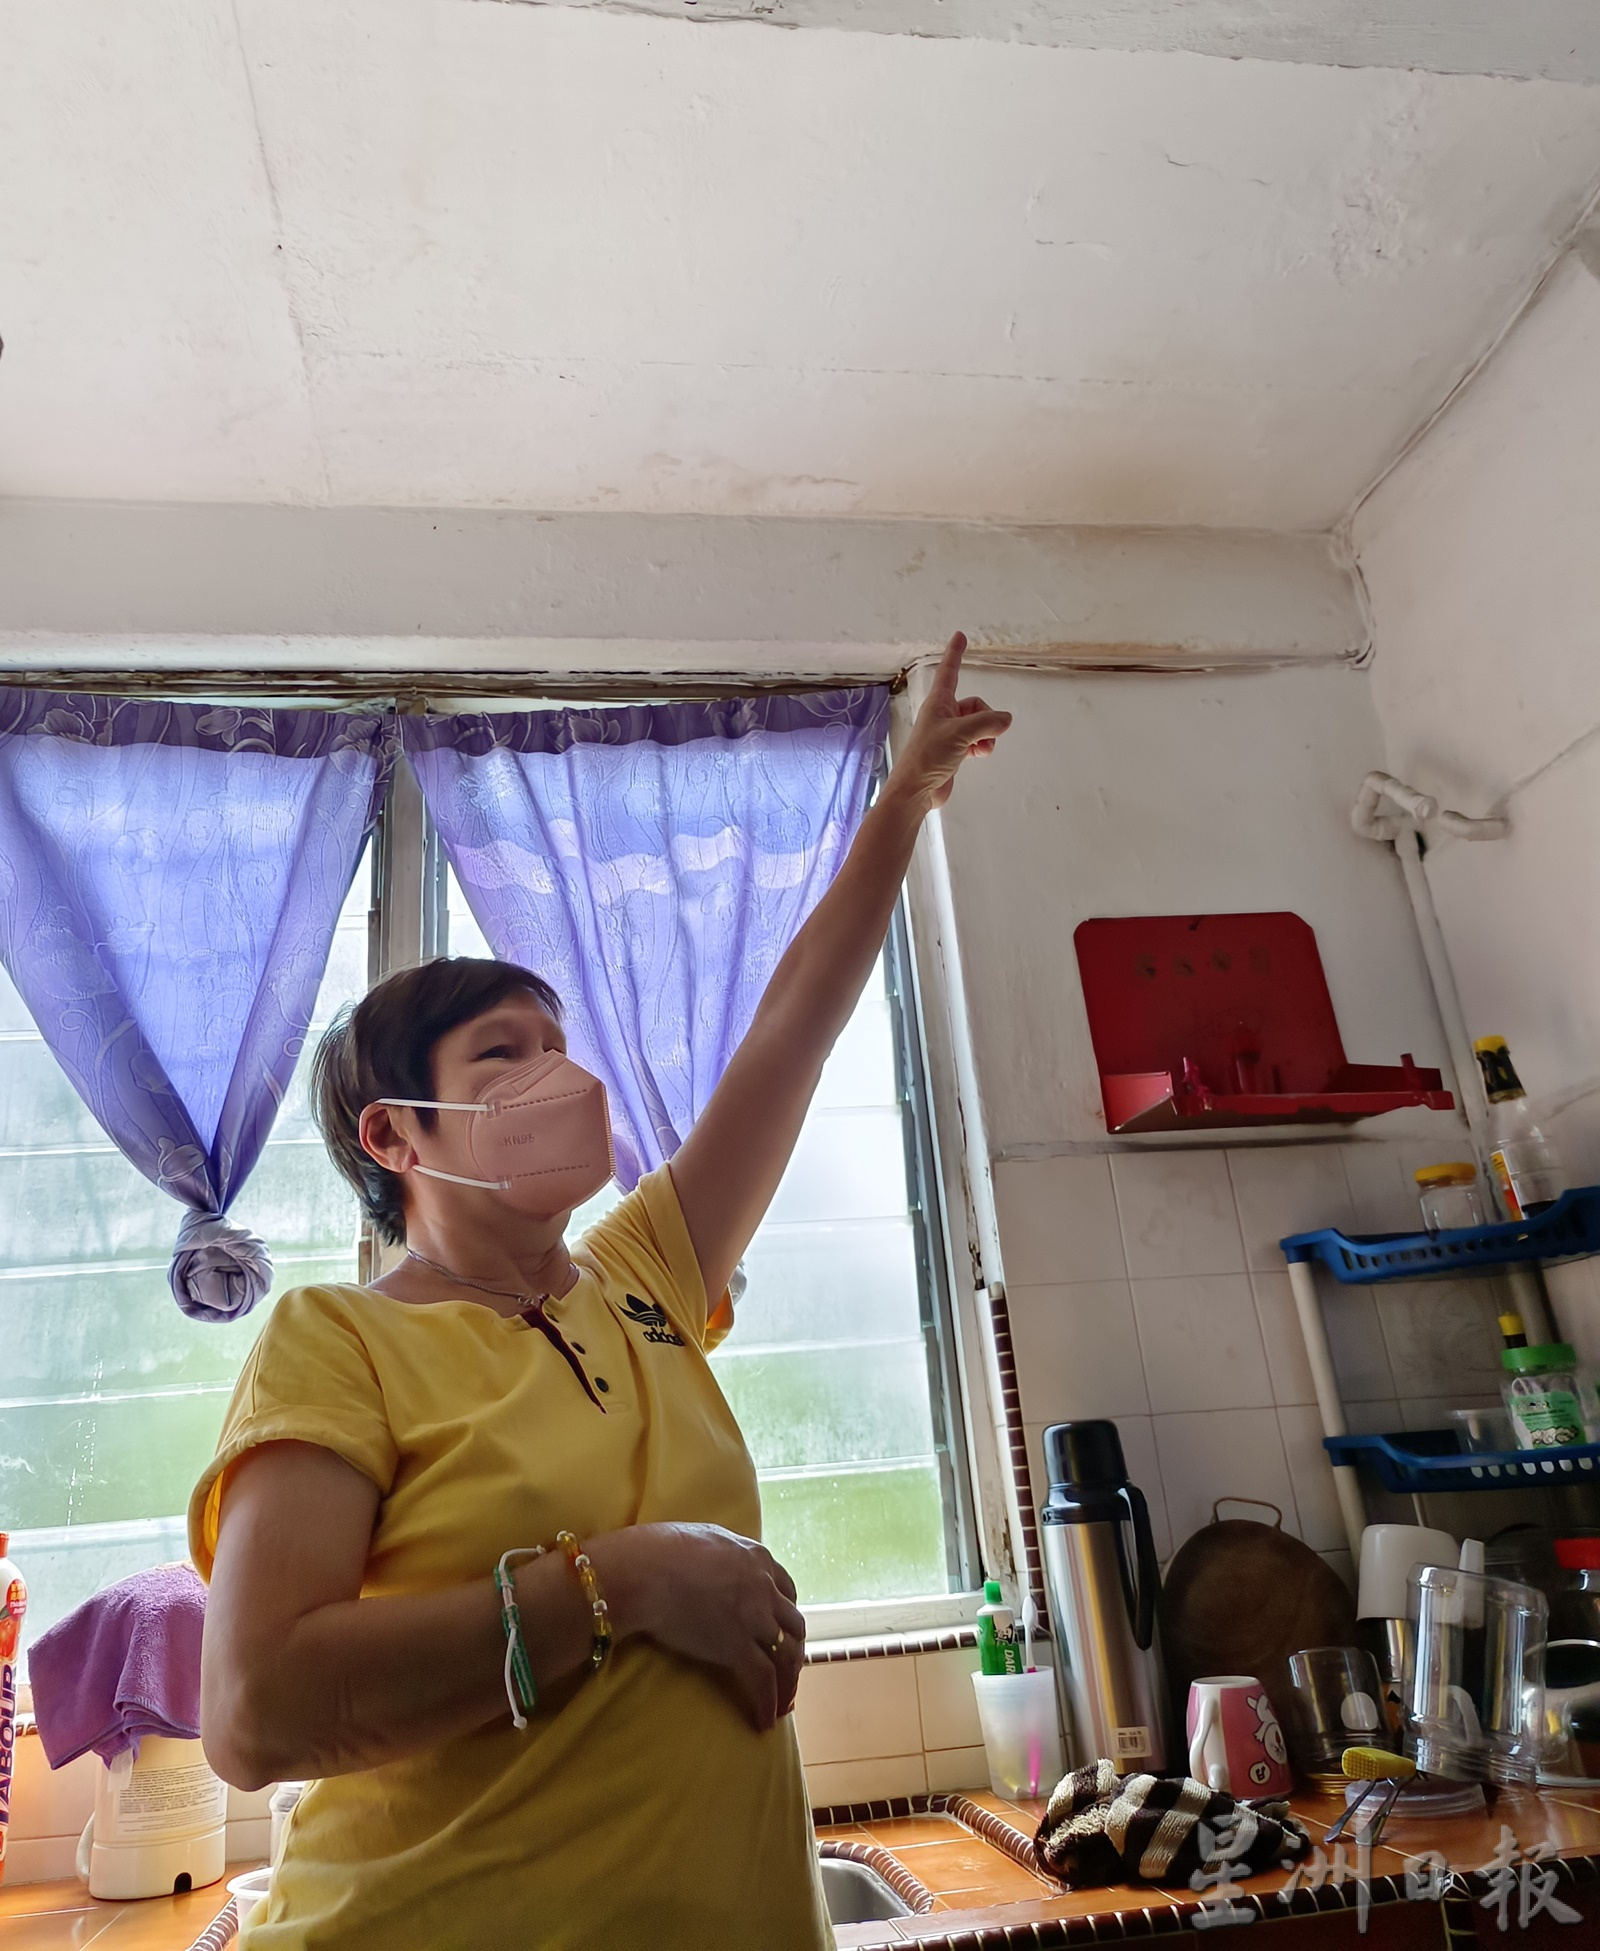 （大北马）亚罗士打新邦瓜拉政府组屋因常年失修，12栋楼超过400多户住家的混凝土横梁掉落，居民每天都必须提心吊胆过生活。